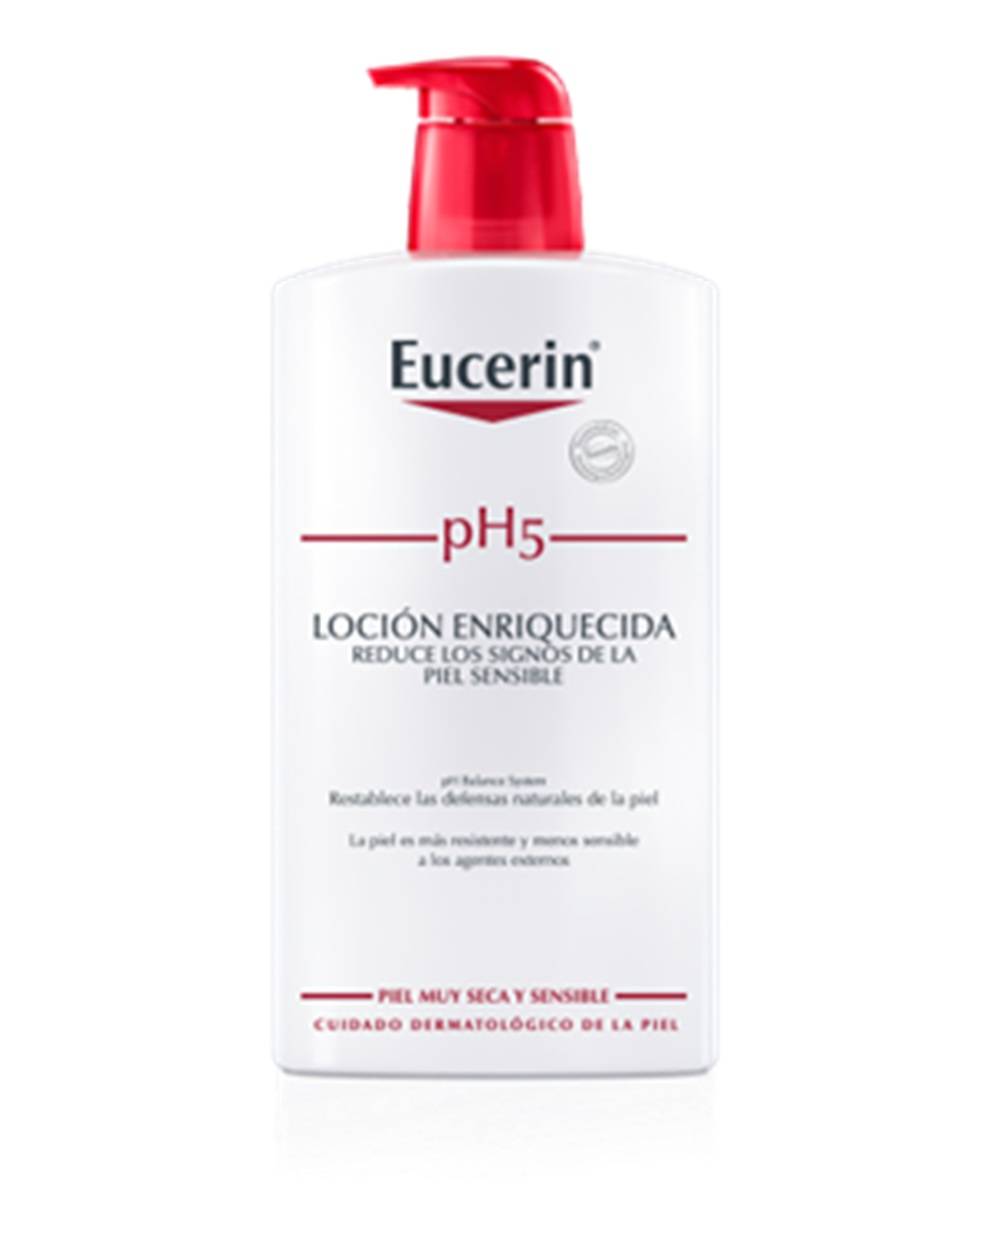 Eucerin PH5 Protection Loción Enriquecida 400 ml